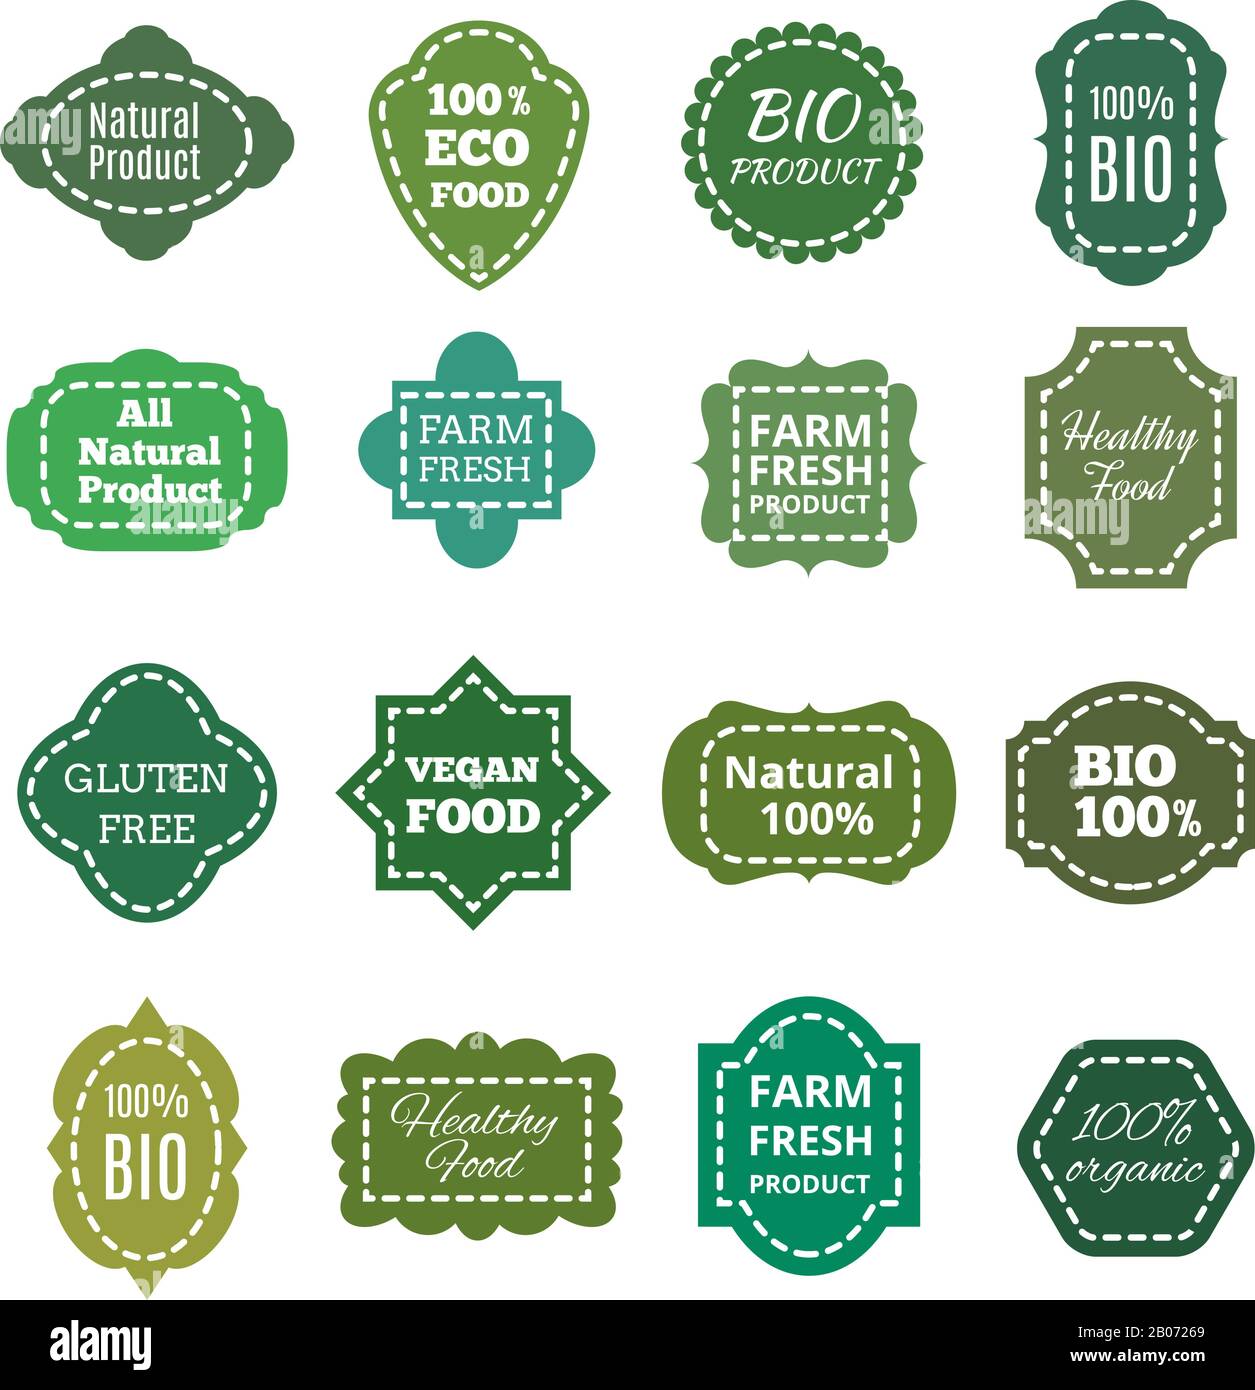 Vintage Natural Bio Product Green Tag, Etiketten, Embleme und Abzeichen. Flecken mit Naht, gesundes Essen und frische Produkte auf dem Bauernhof. Vektorgrafiken Stock Vektor